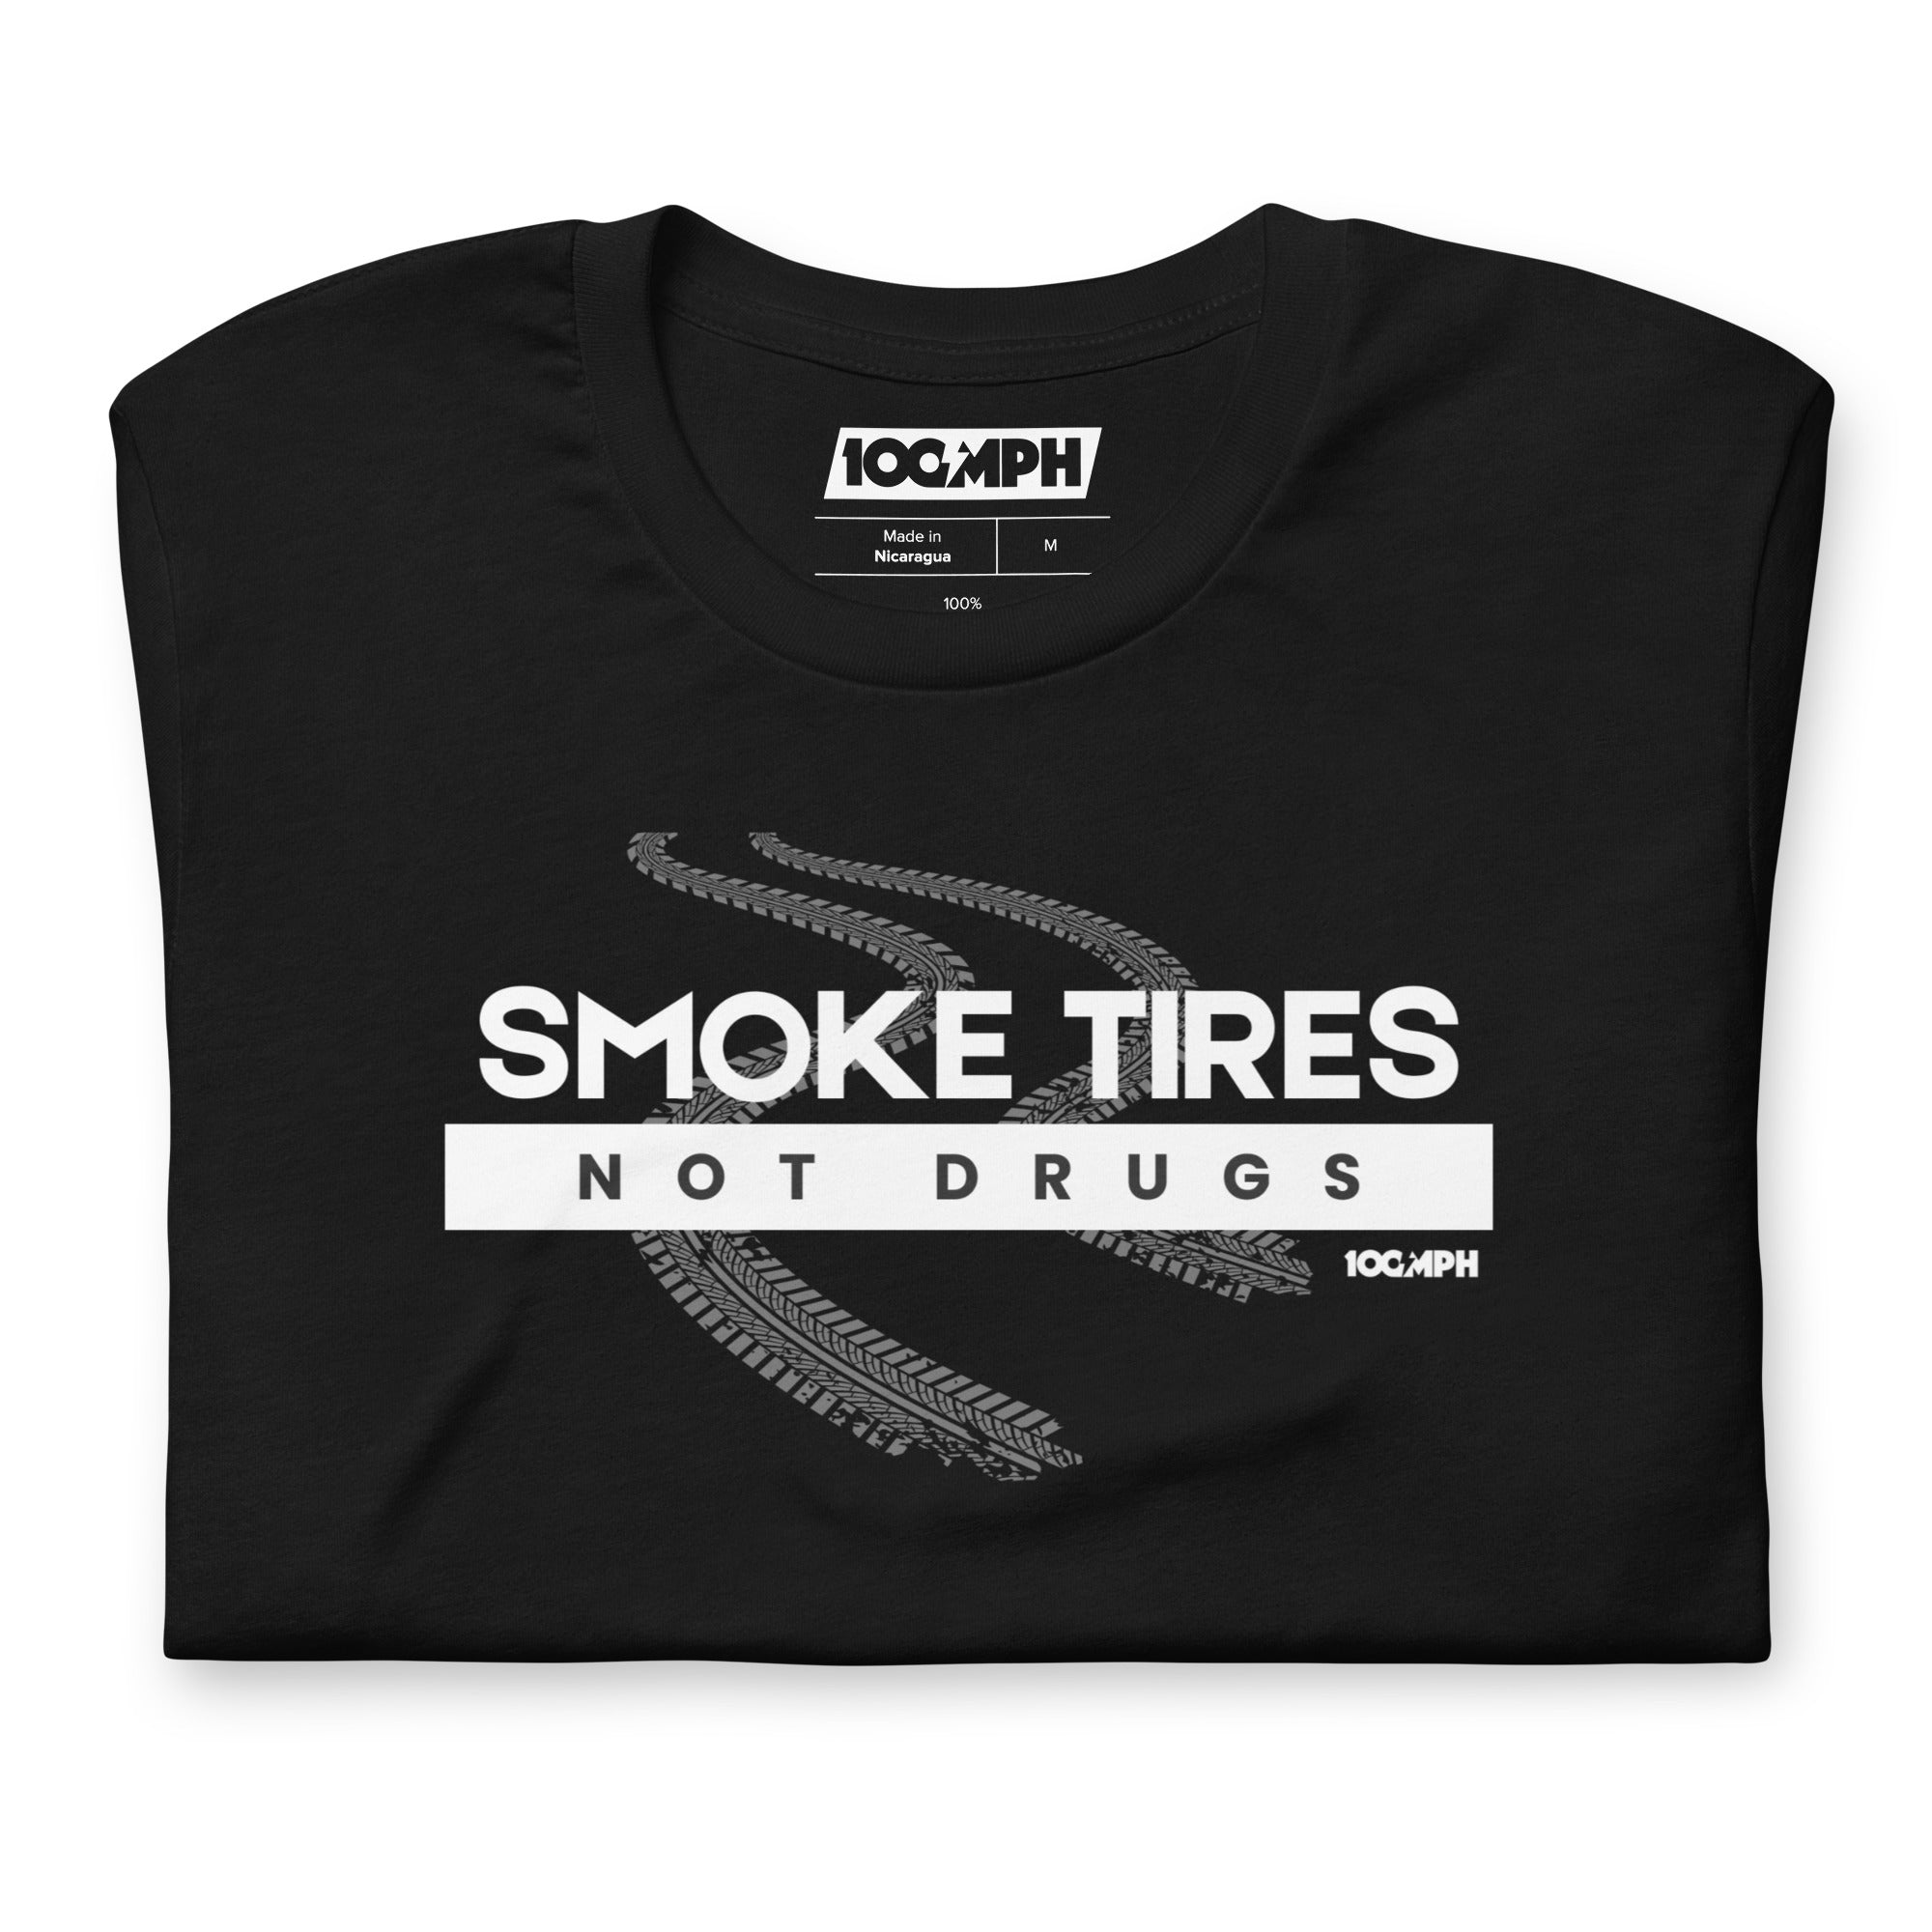 Smoke Tires. Not Drugs